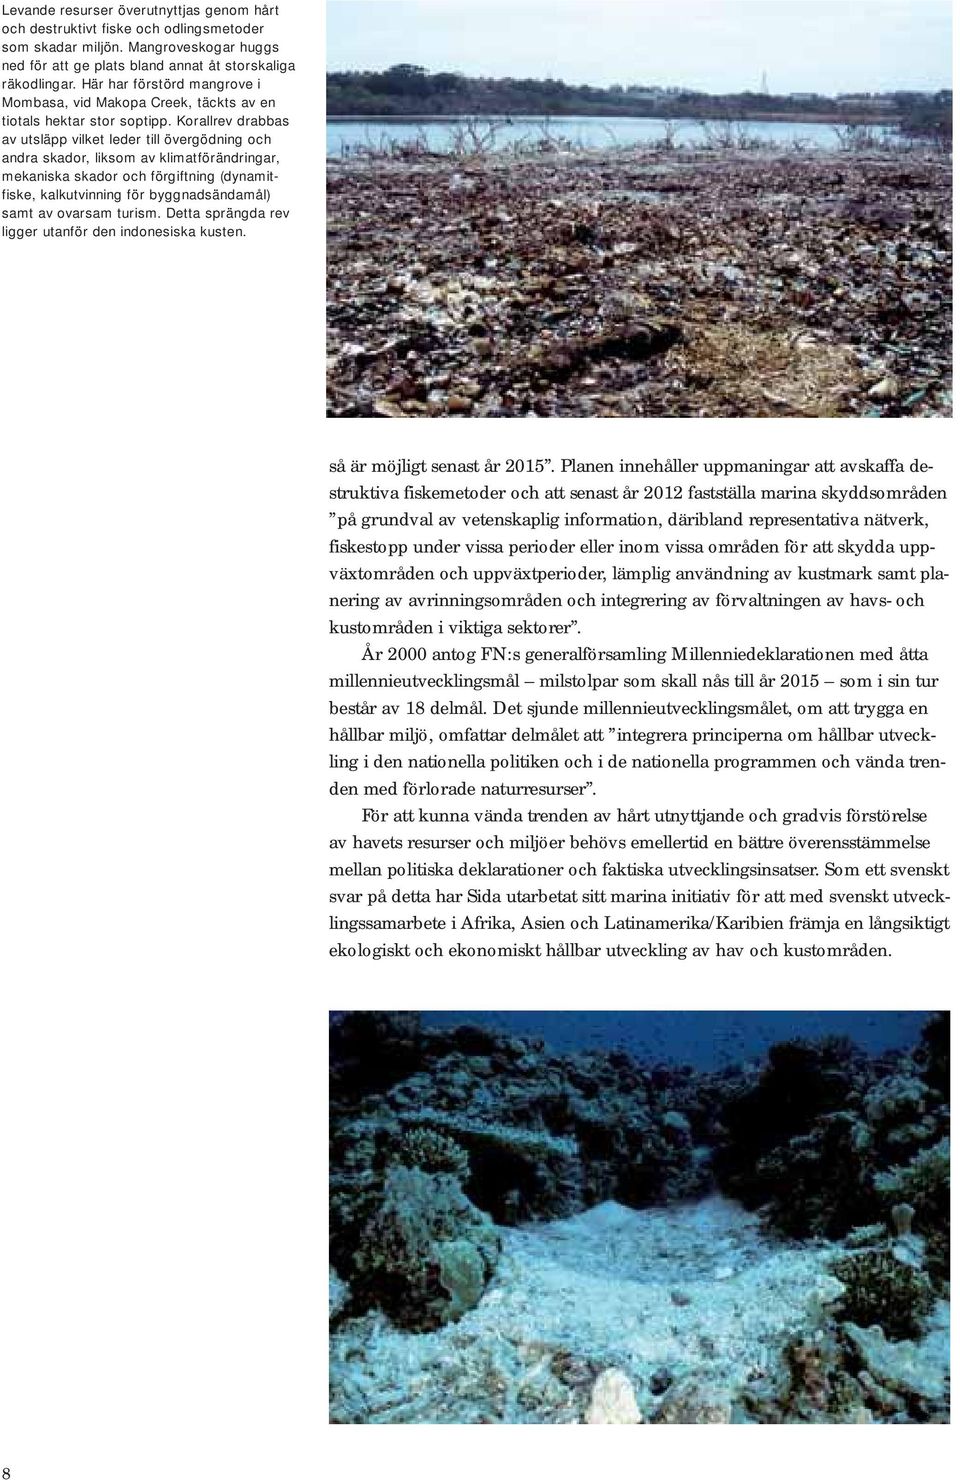 Korallrev drabbas av utsläpp vilket leder till övergödning och andra skador, liksom av klimatförändringar, mekaniska skador och förgiftning (dynamitfiske, kalkutvinning för byggnadsändamål) samt av